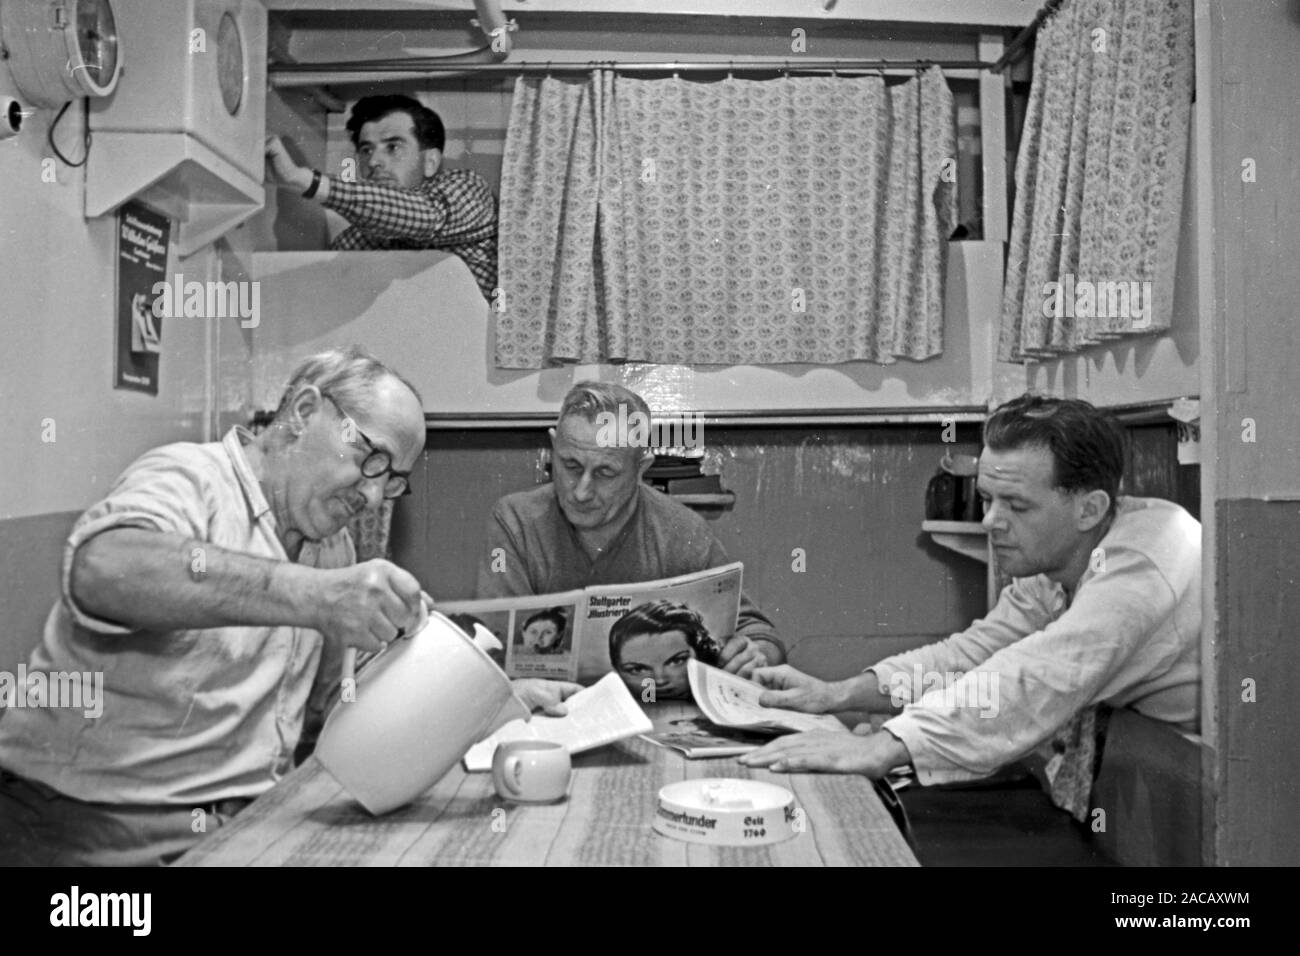 Männer in Kajüte trinken Kaffee und lesen Zeitung, Emden, Niedersachsen, Deutschland, 1950. Gli uomini in cabina bere un caffè e leggere il giornale, Emden, Bassa Sassonia, Germania, 1950. Foto Stock